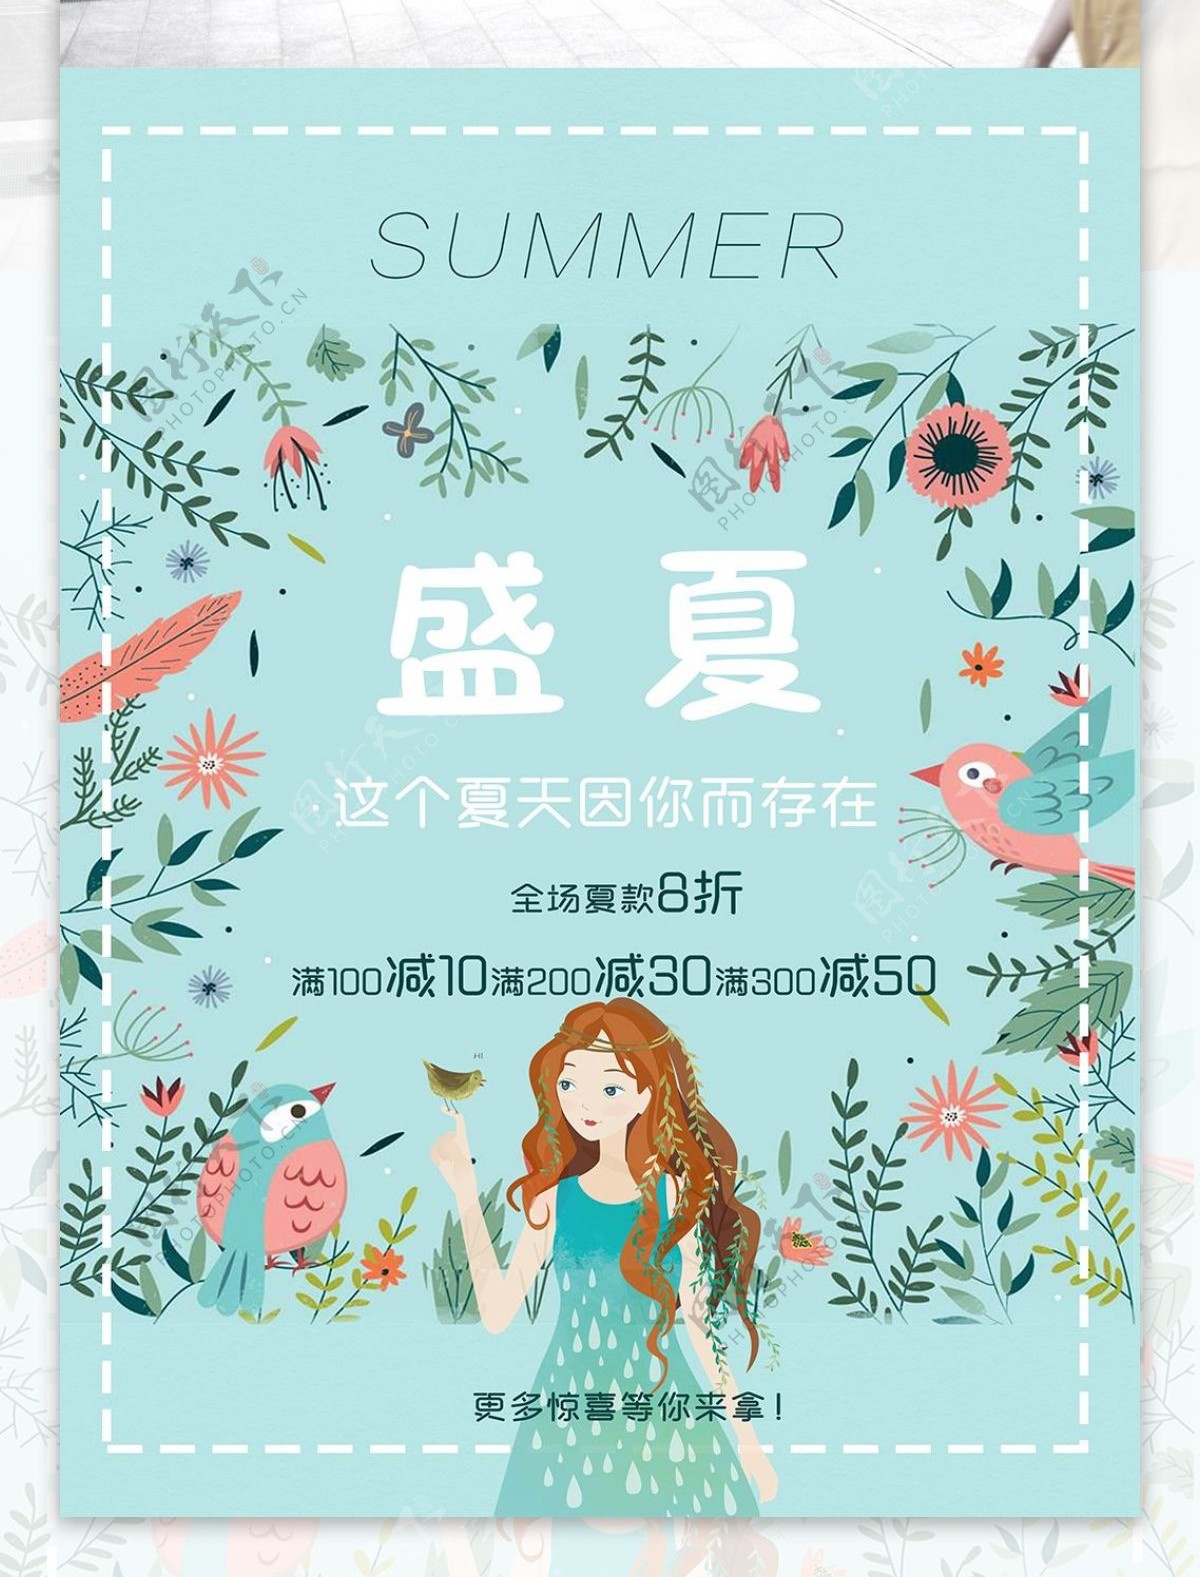 2018盛夏夏天活动宣传海报